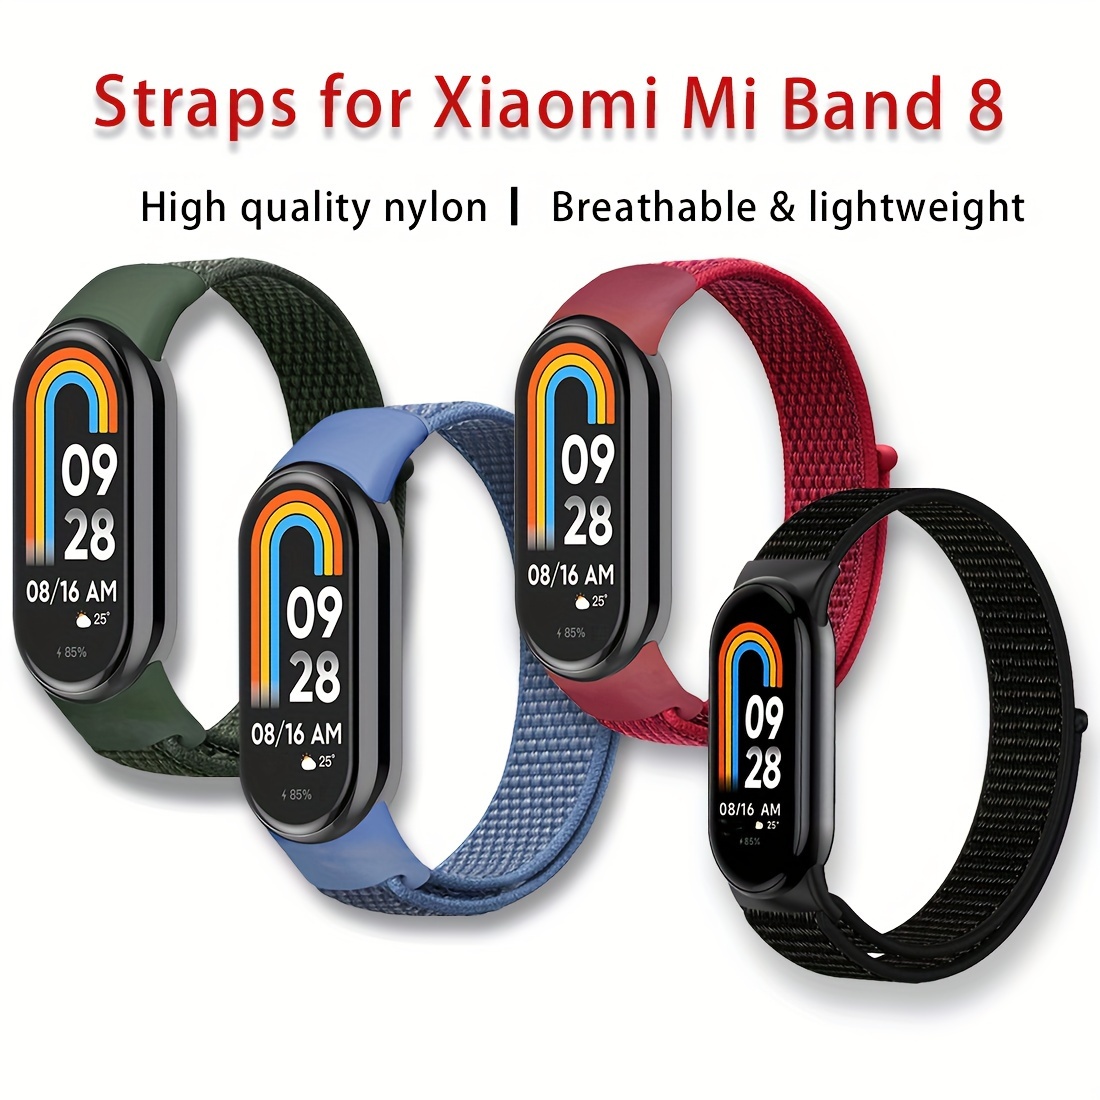  Paquete de 4/5/8) Correa Xiaomi Mi 5 y Mi 6/Amazfit Band 5  bandas de repuesto para Mi Band 5 y Mi 6 SmartWatch Band y Amazfit Band 5,  correas de silicona